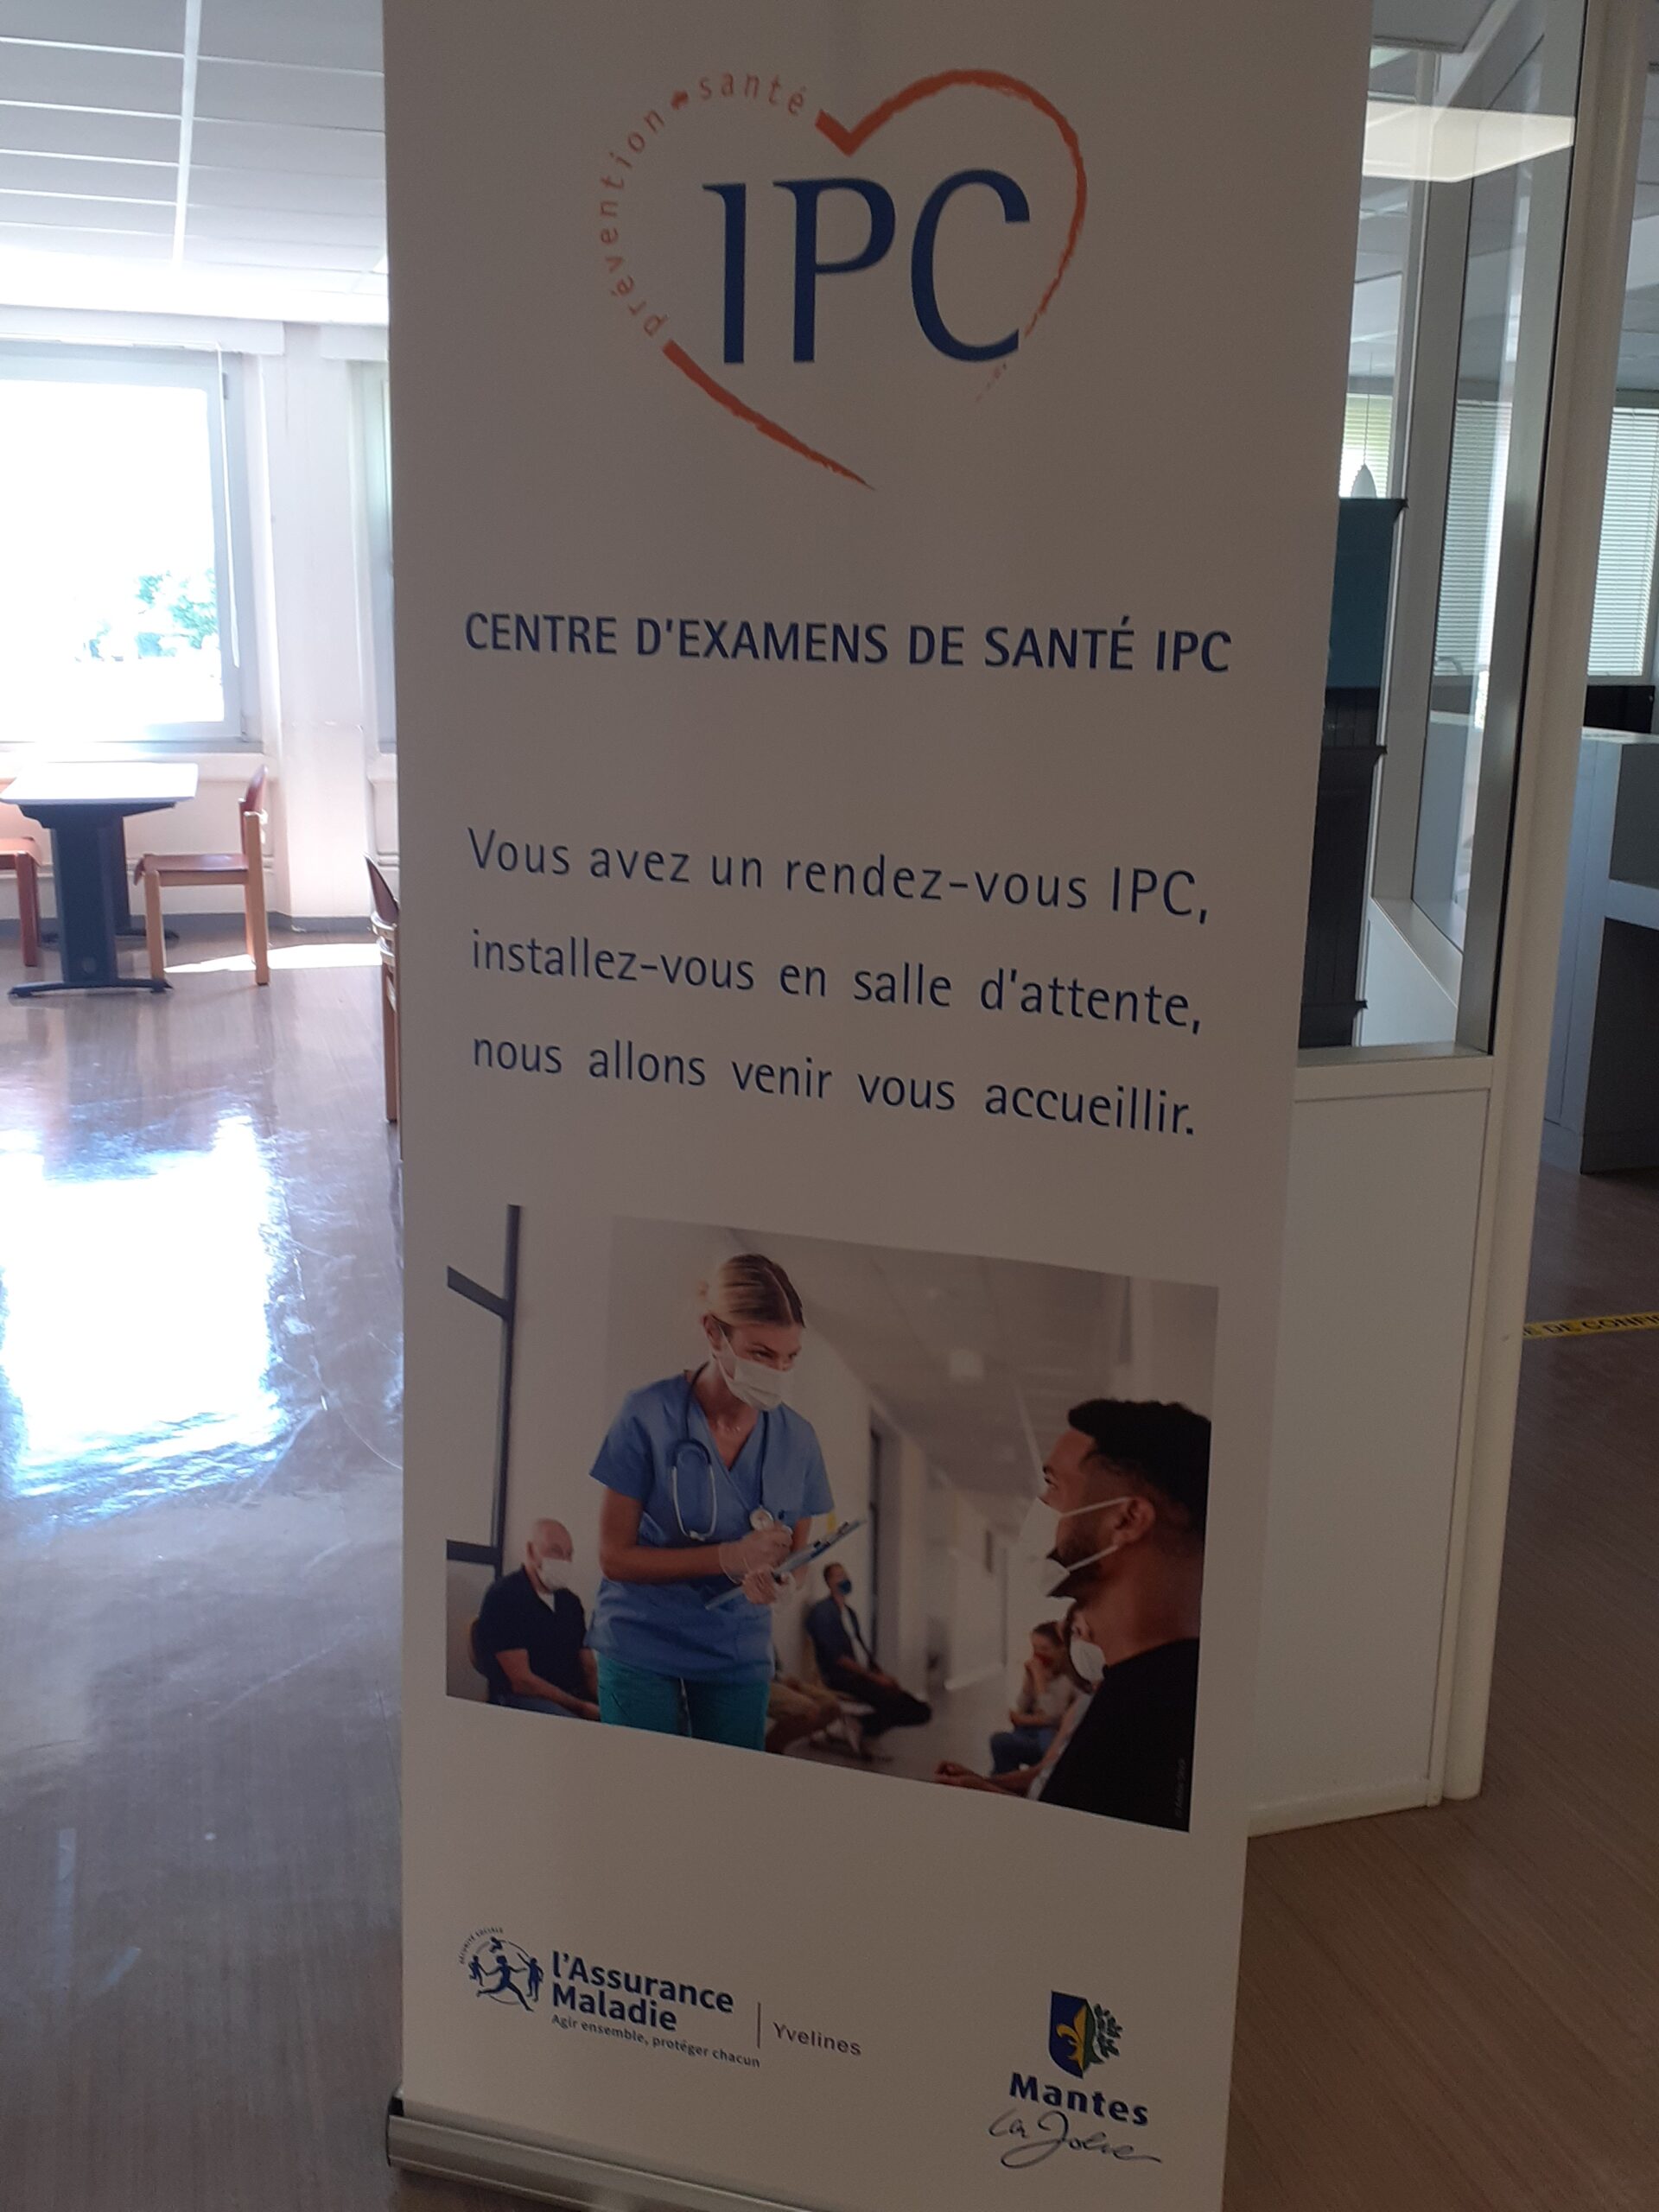 Le centre IPC de Mantes-la-Jolie, centre d'examen de santé, propose des examens de prévention en santé gratuits et organise des actions de promotion de la santé